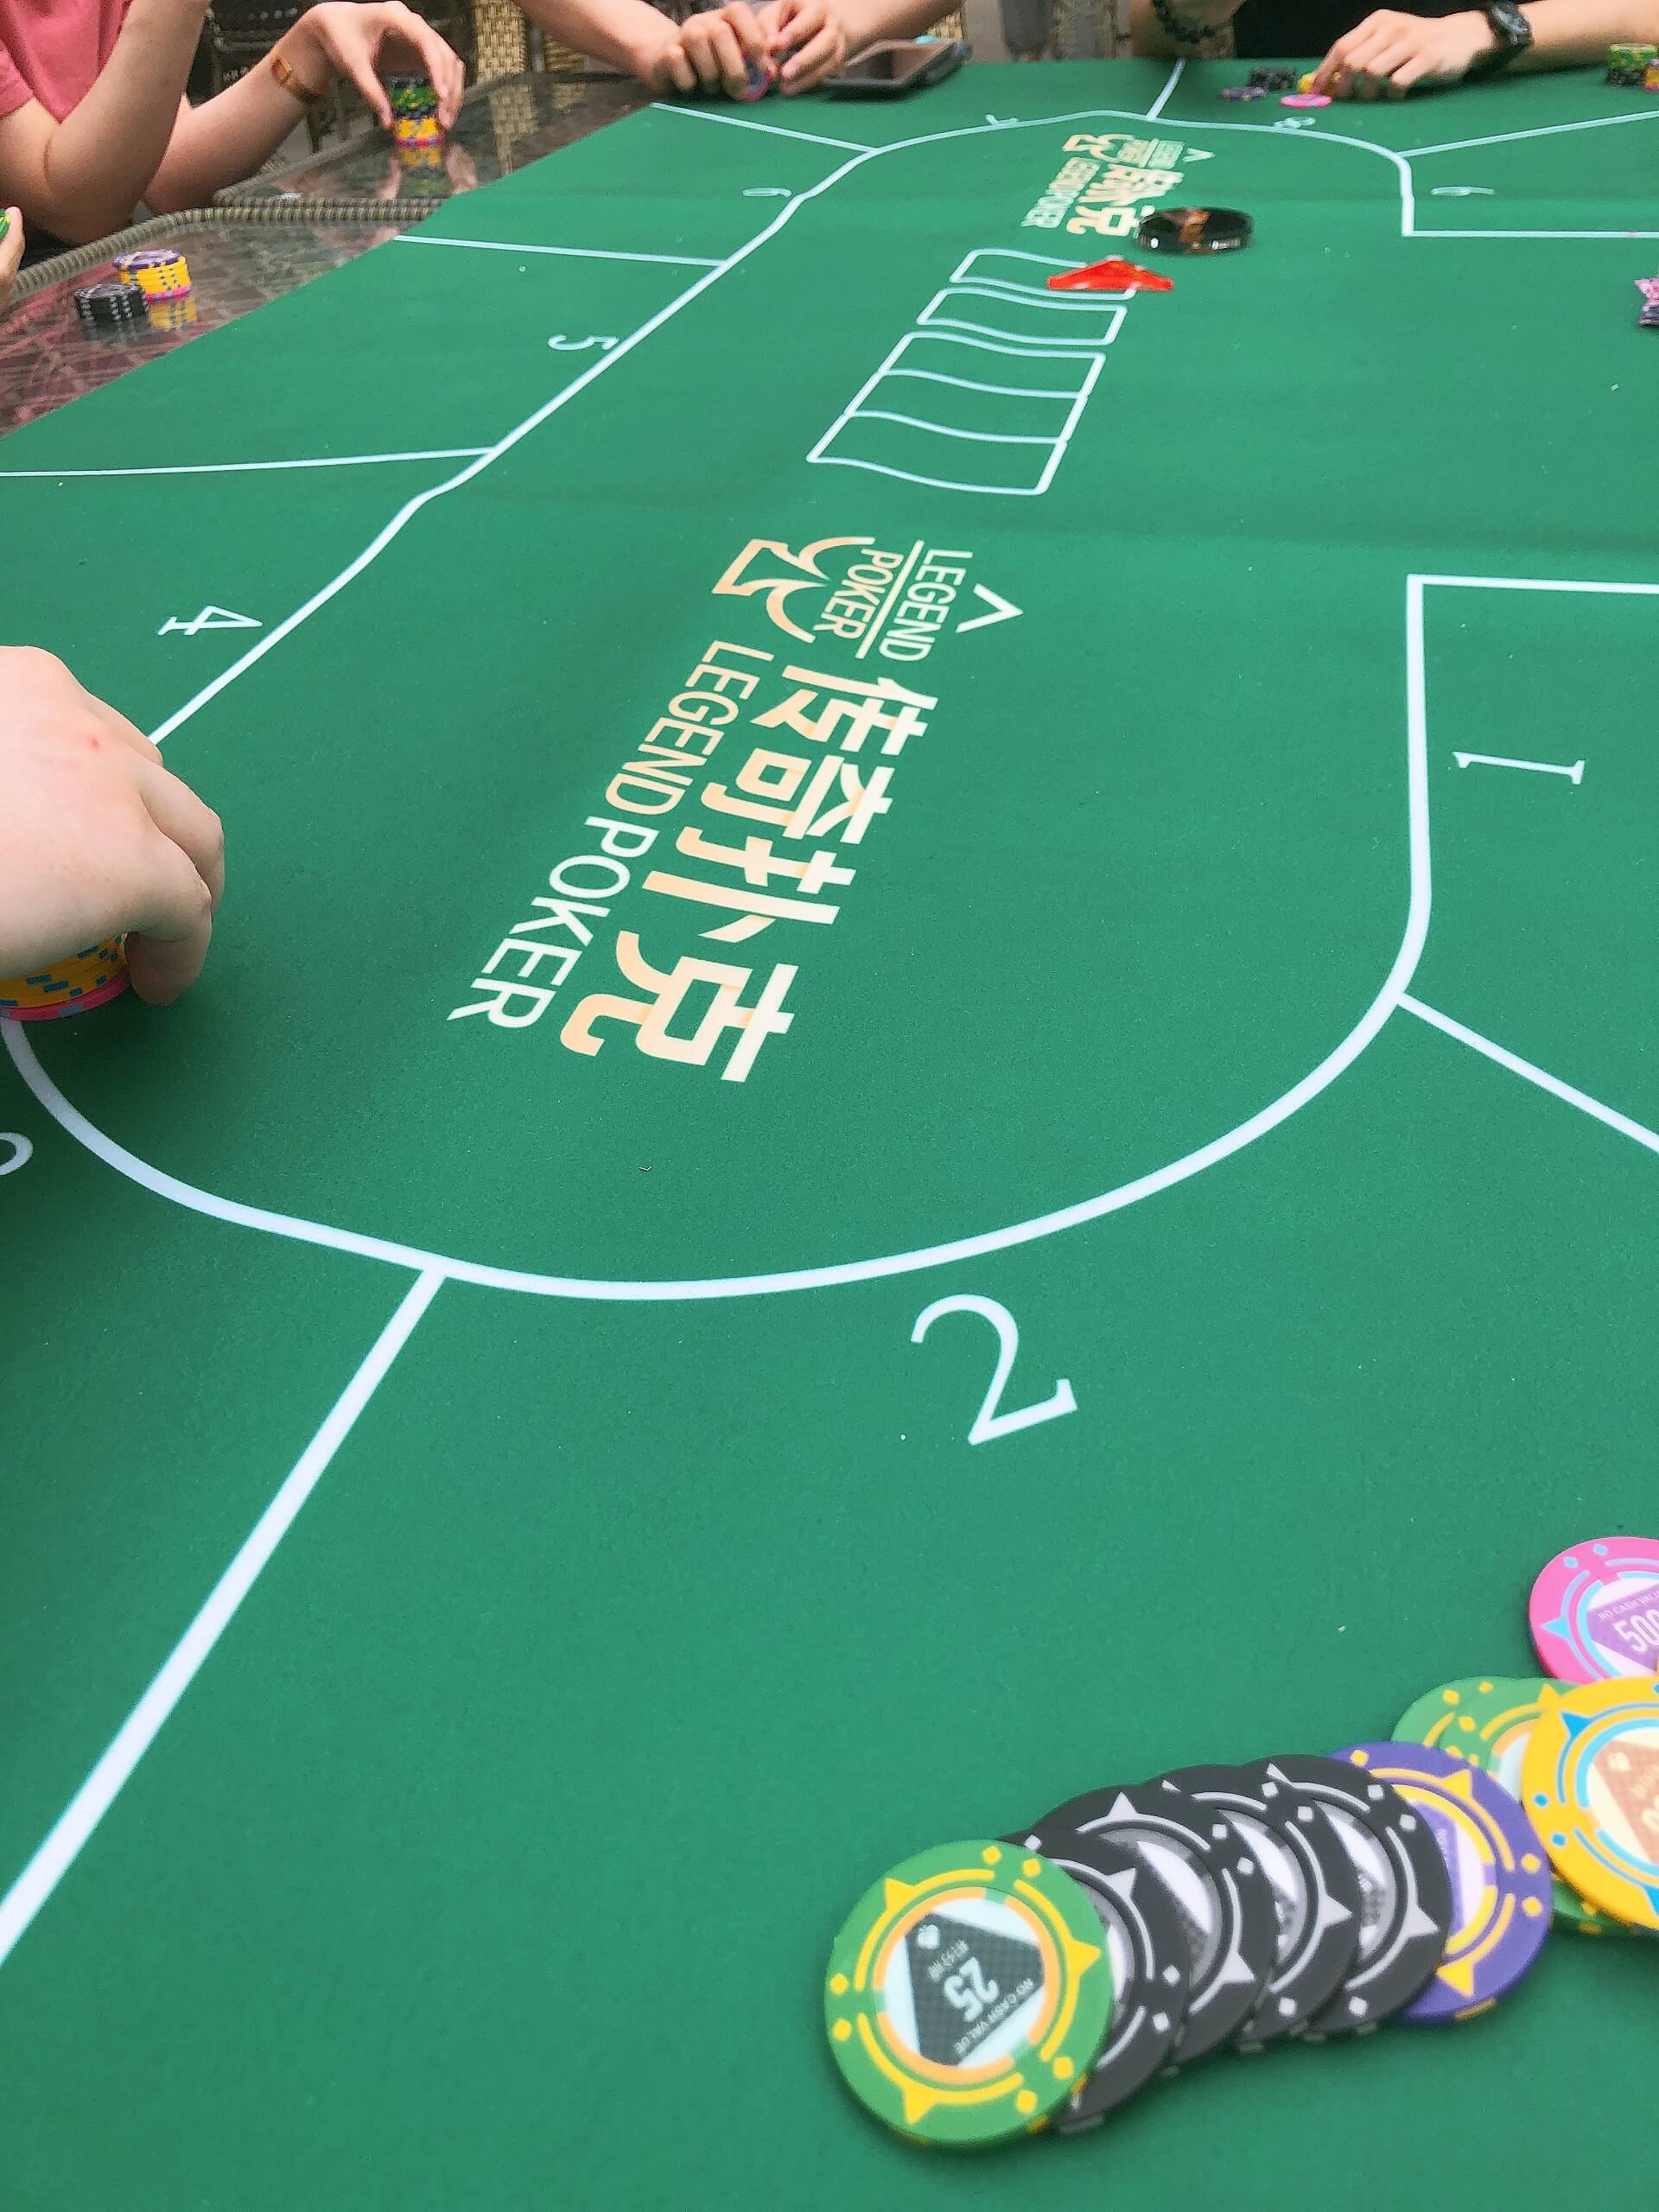 牌局讨论是不是学习传奇扑克的优质方法？